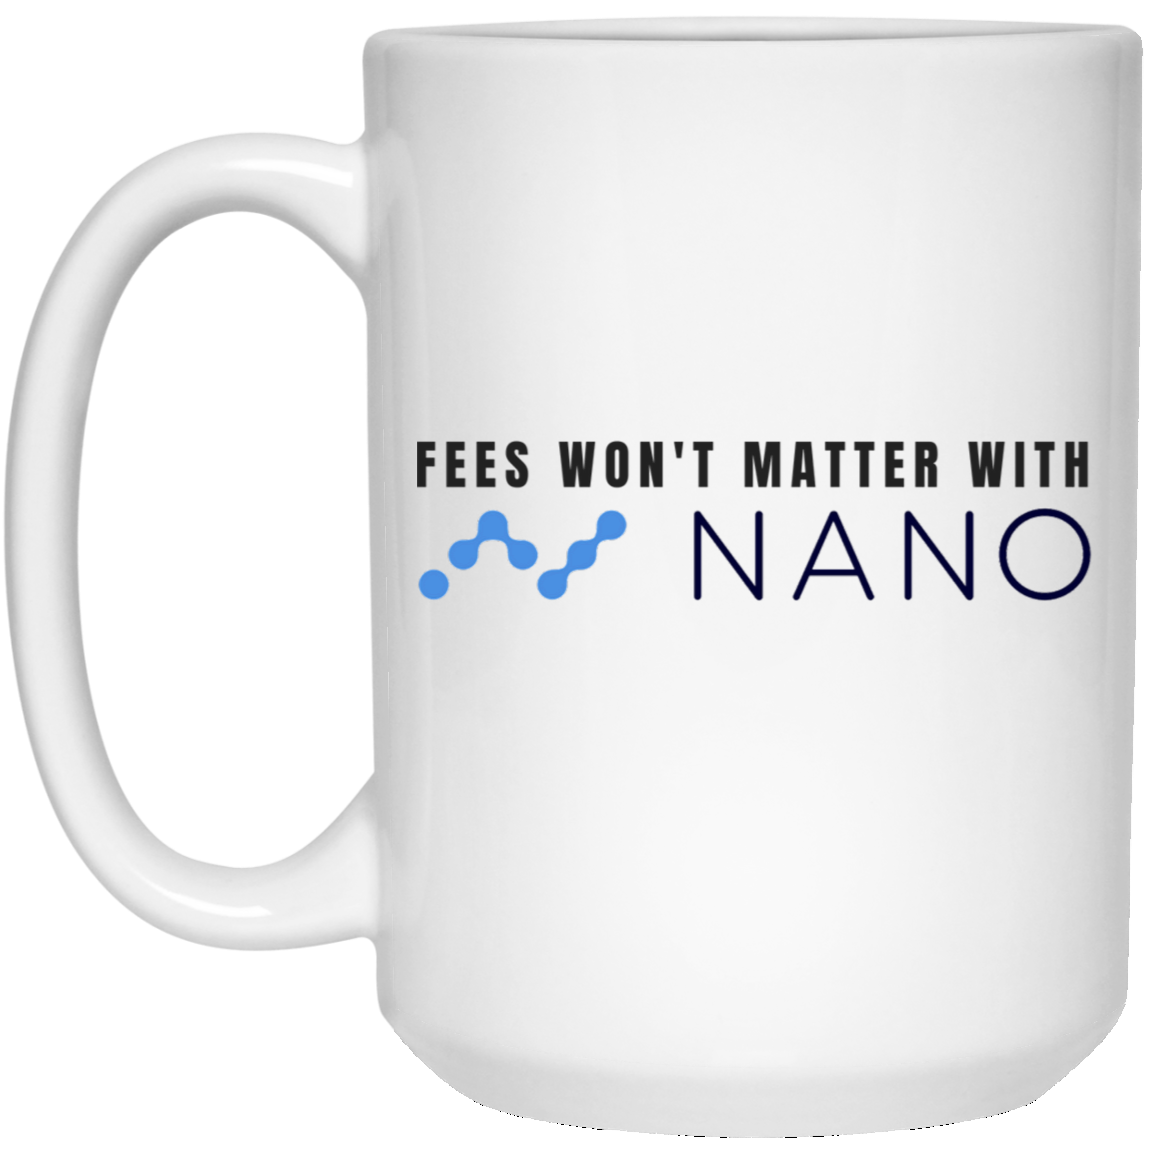 Fees won't matter with nano - 15 oz. White Mug TCP1607 White / One Size Official Crypto  Merch